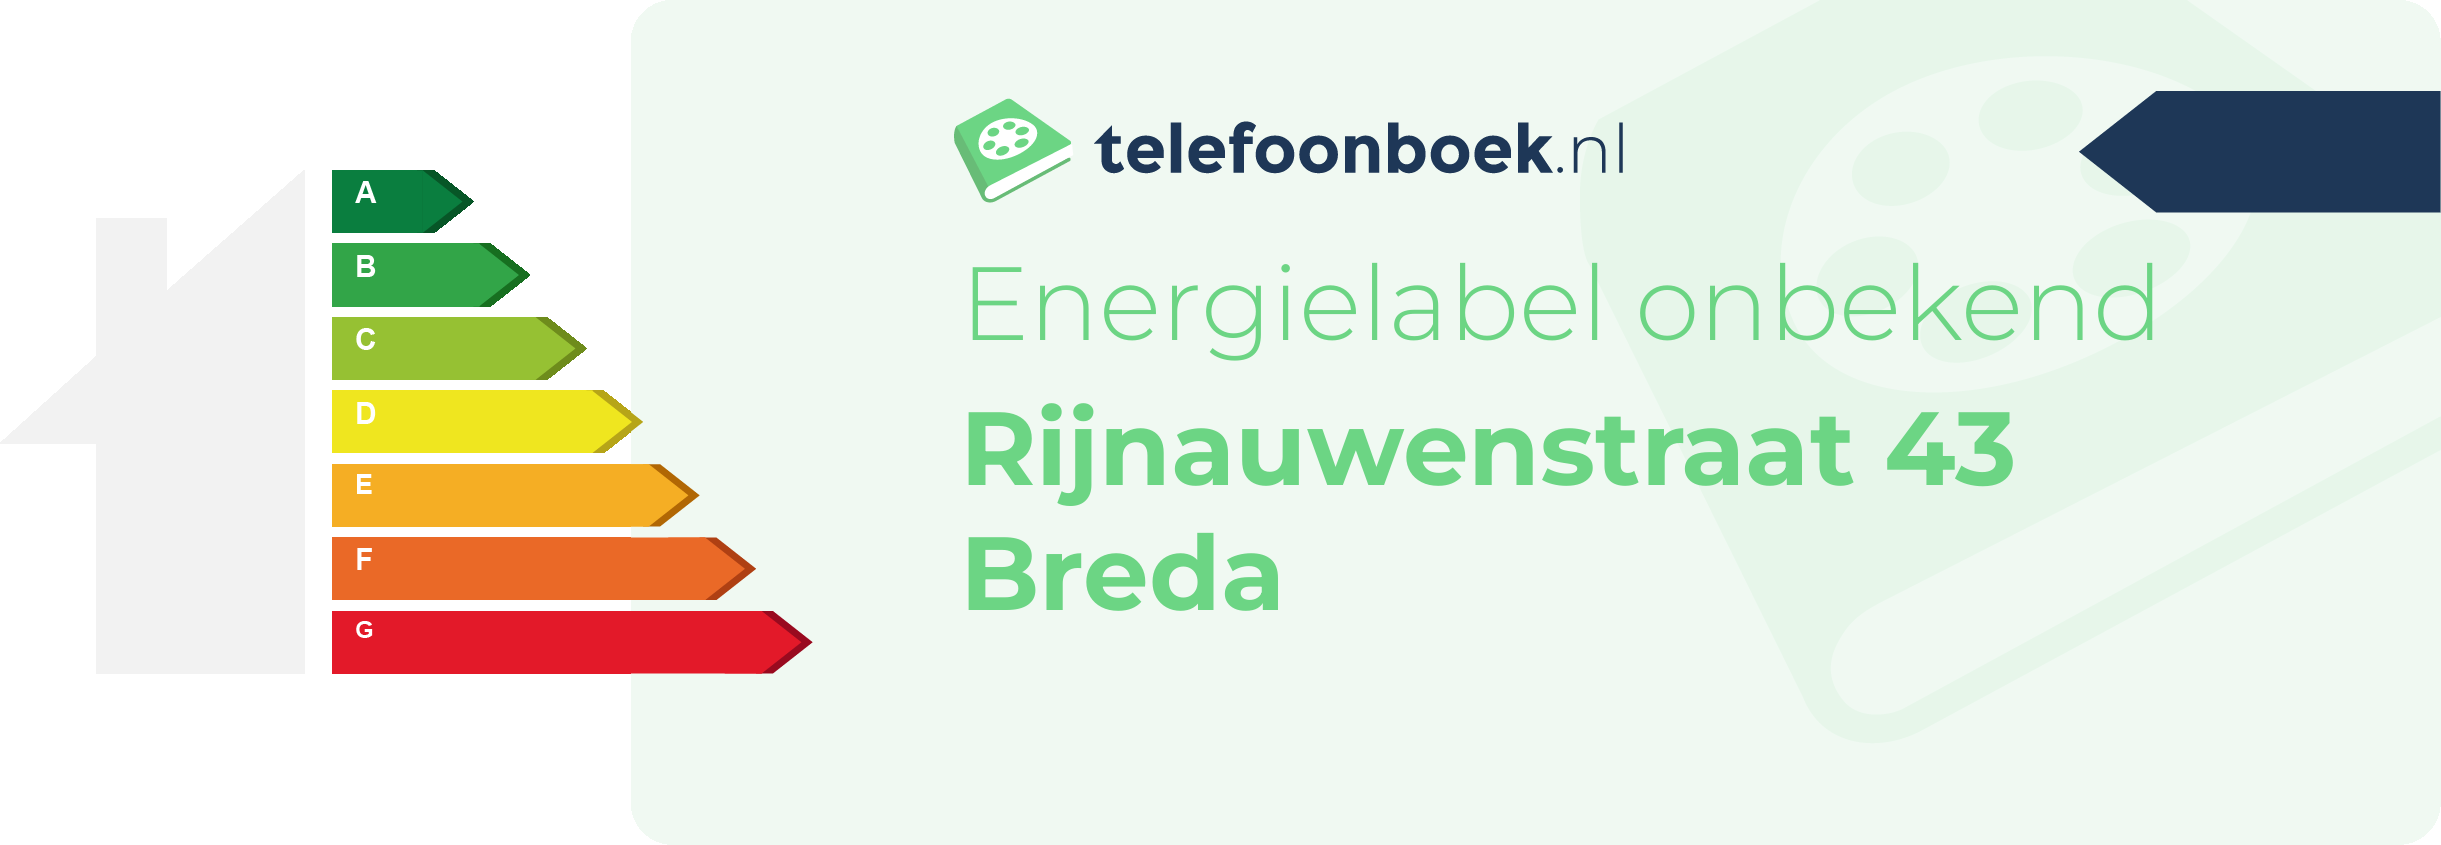 Energielabel Rijnauwenstraat 43 Breda